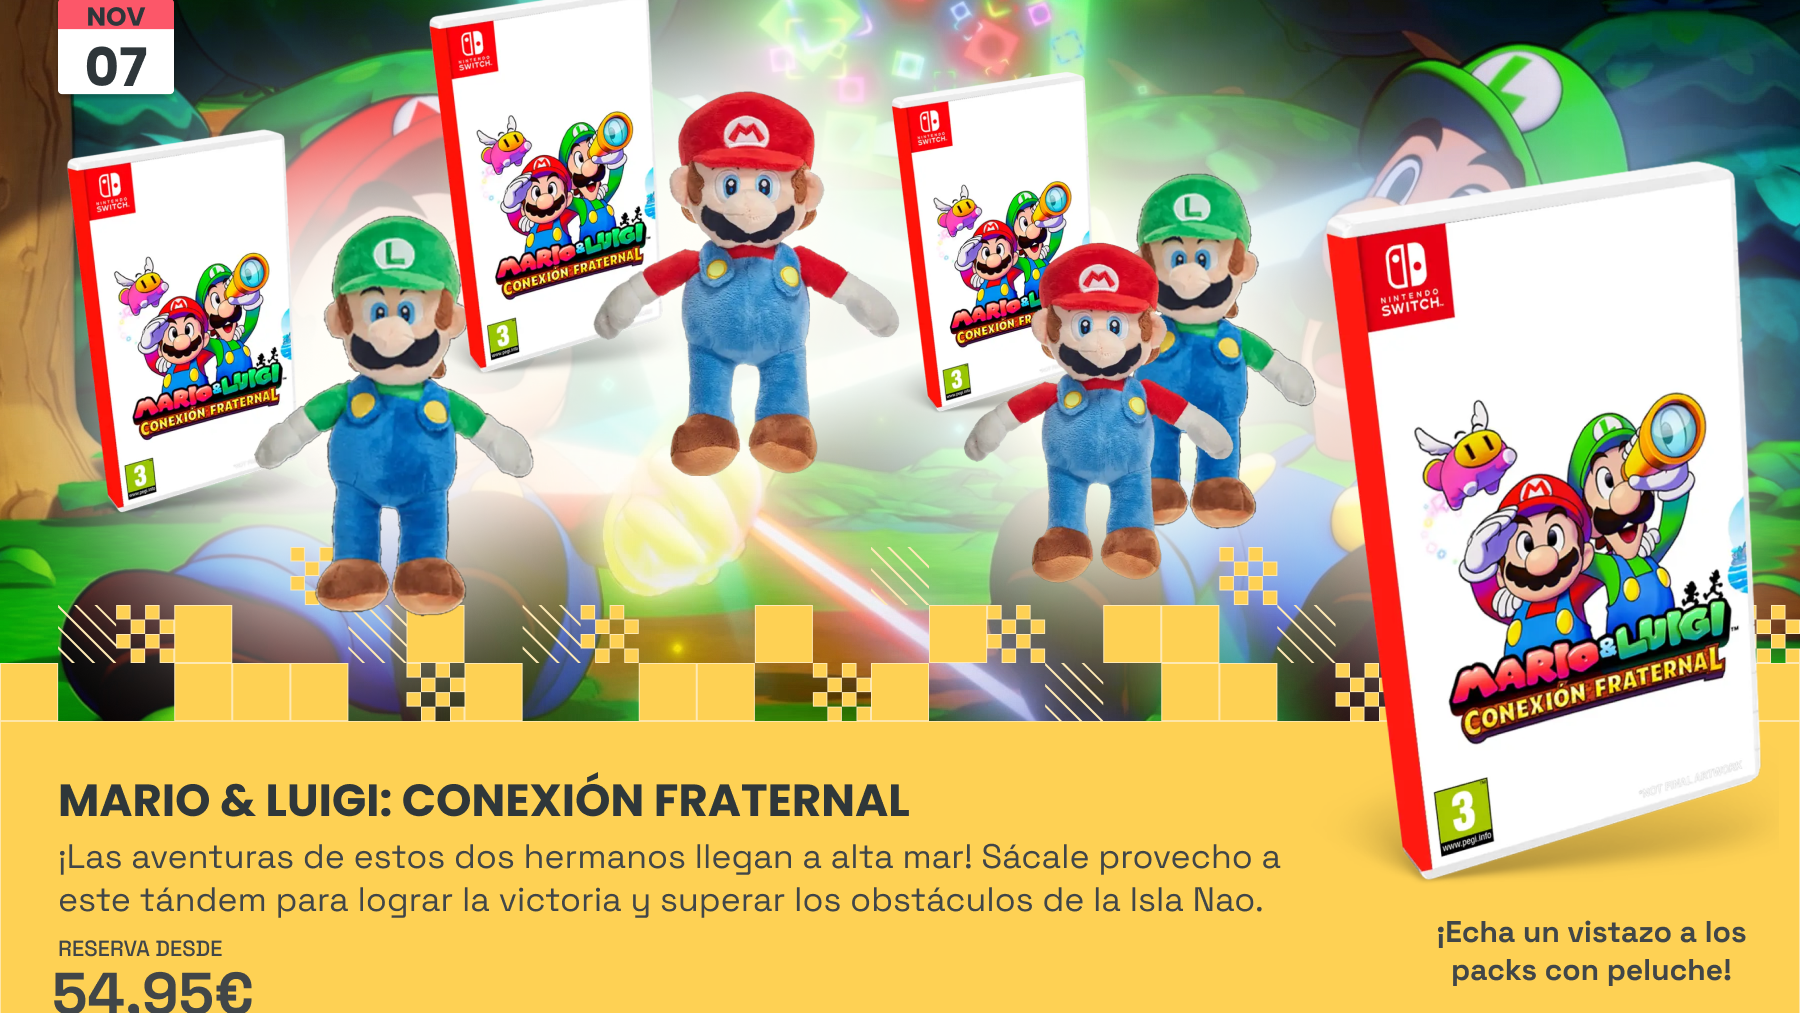 Mario & Luigi: Conexión Fraternal – Una nueva aventura en Alta Mar que ya puedes reservar